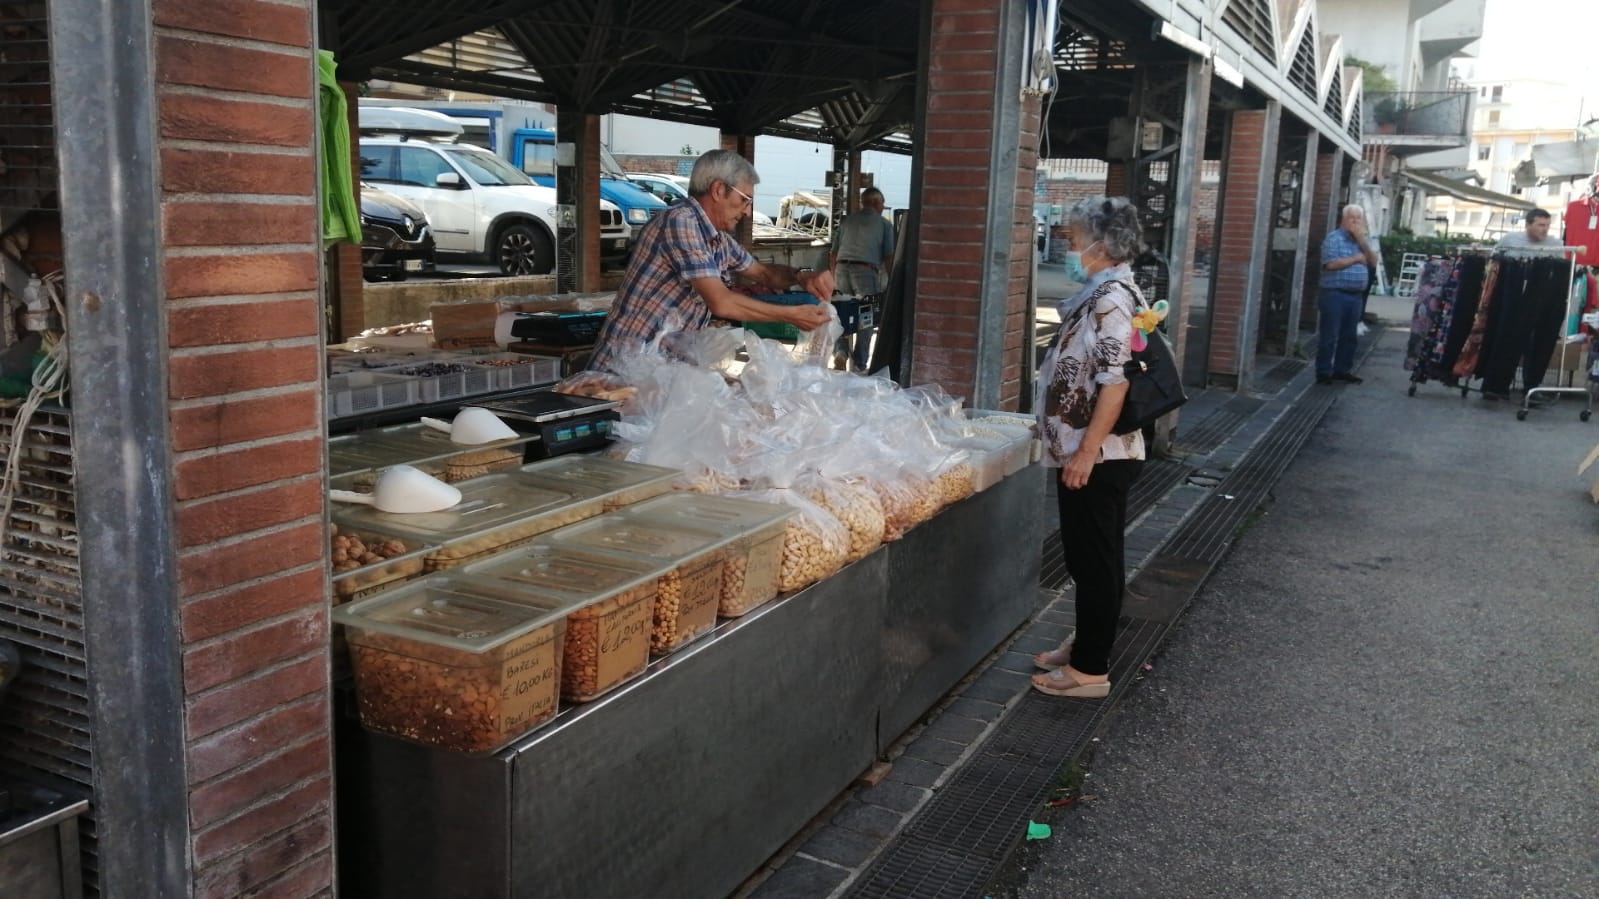 Mercato pomeridiano a Benevento, si lavora ad altre iniziative